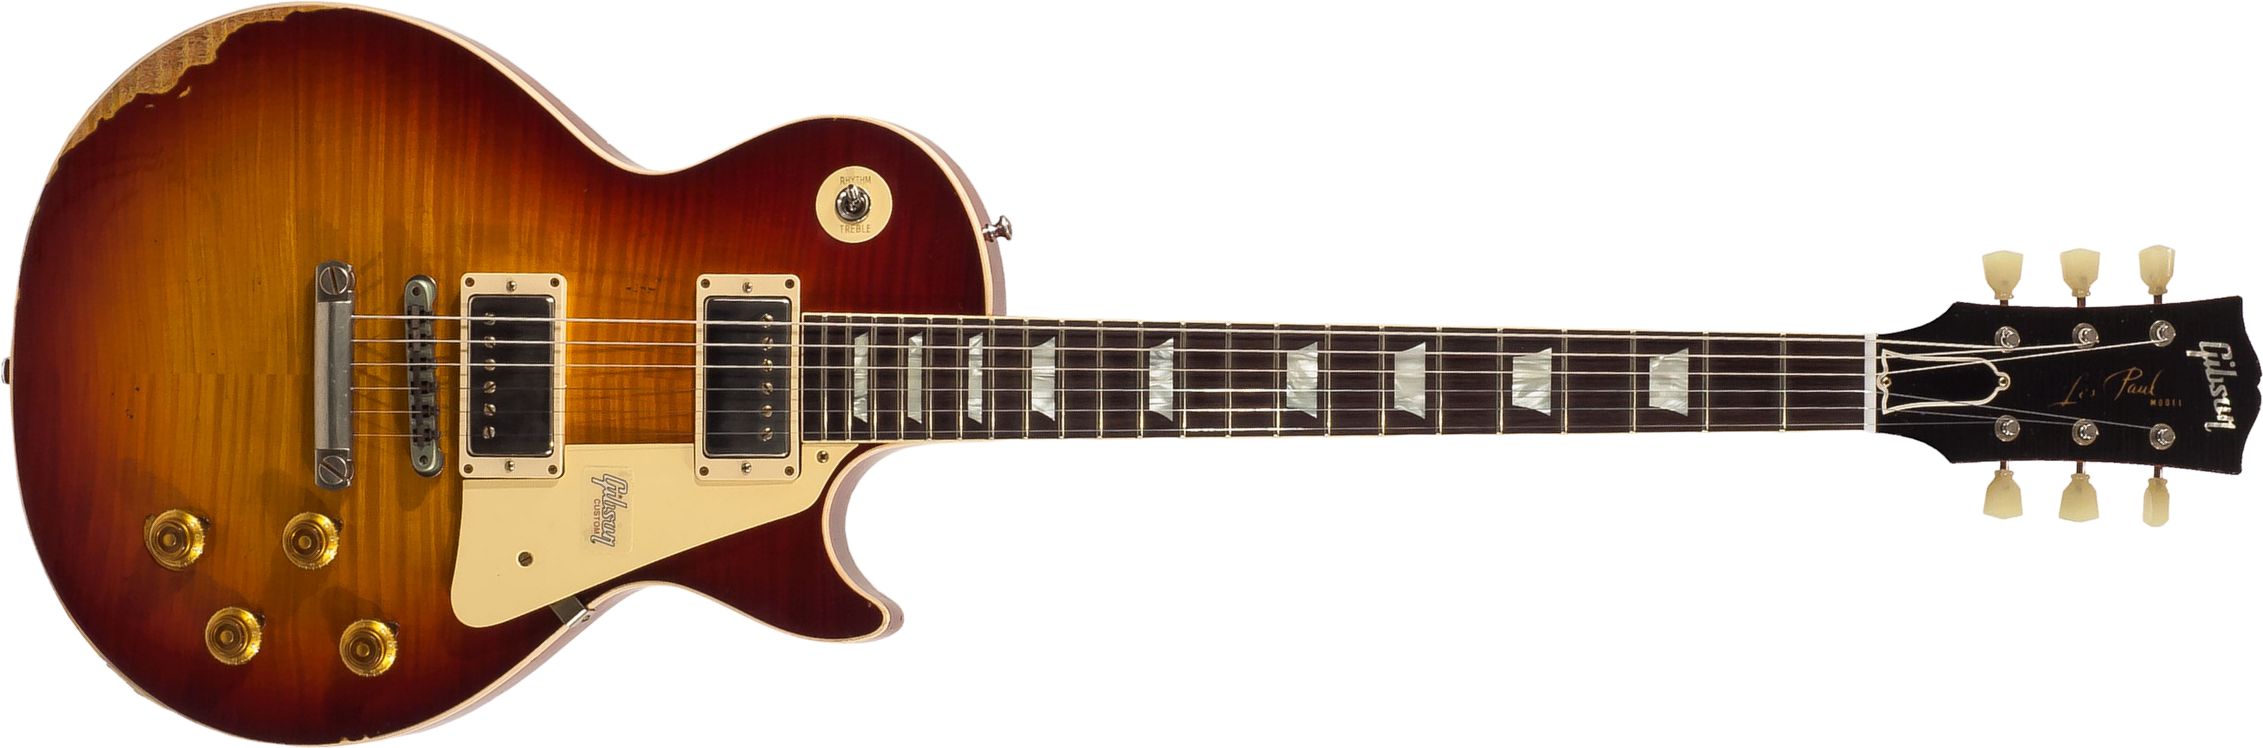 Gibson Custom Shop M2m Les Paul Standard 1959 2h Ht Rw #982206 - Heavy Aged Vintage Cherry Burst - Guitare Électrique Single Cut - Main picture